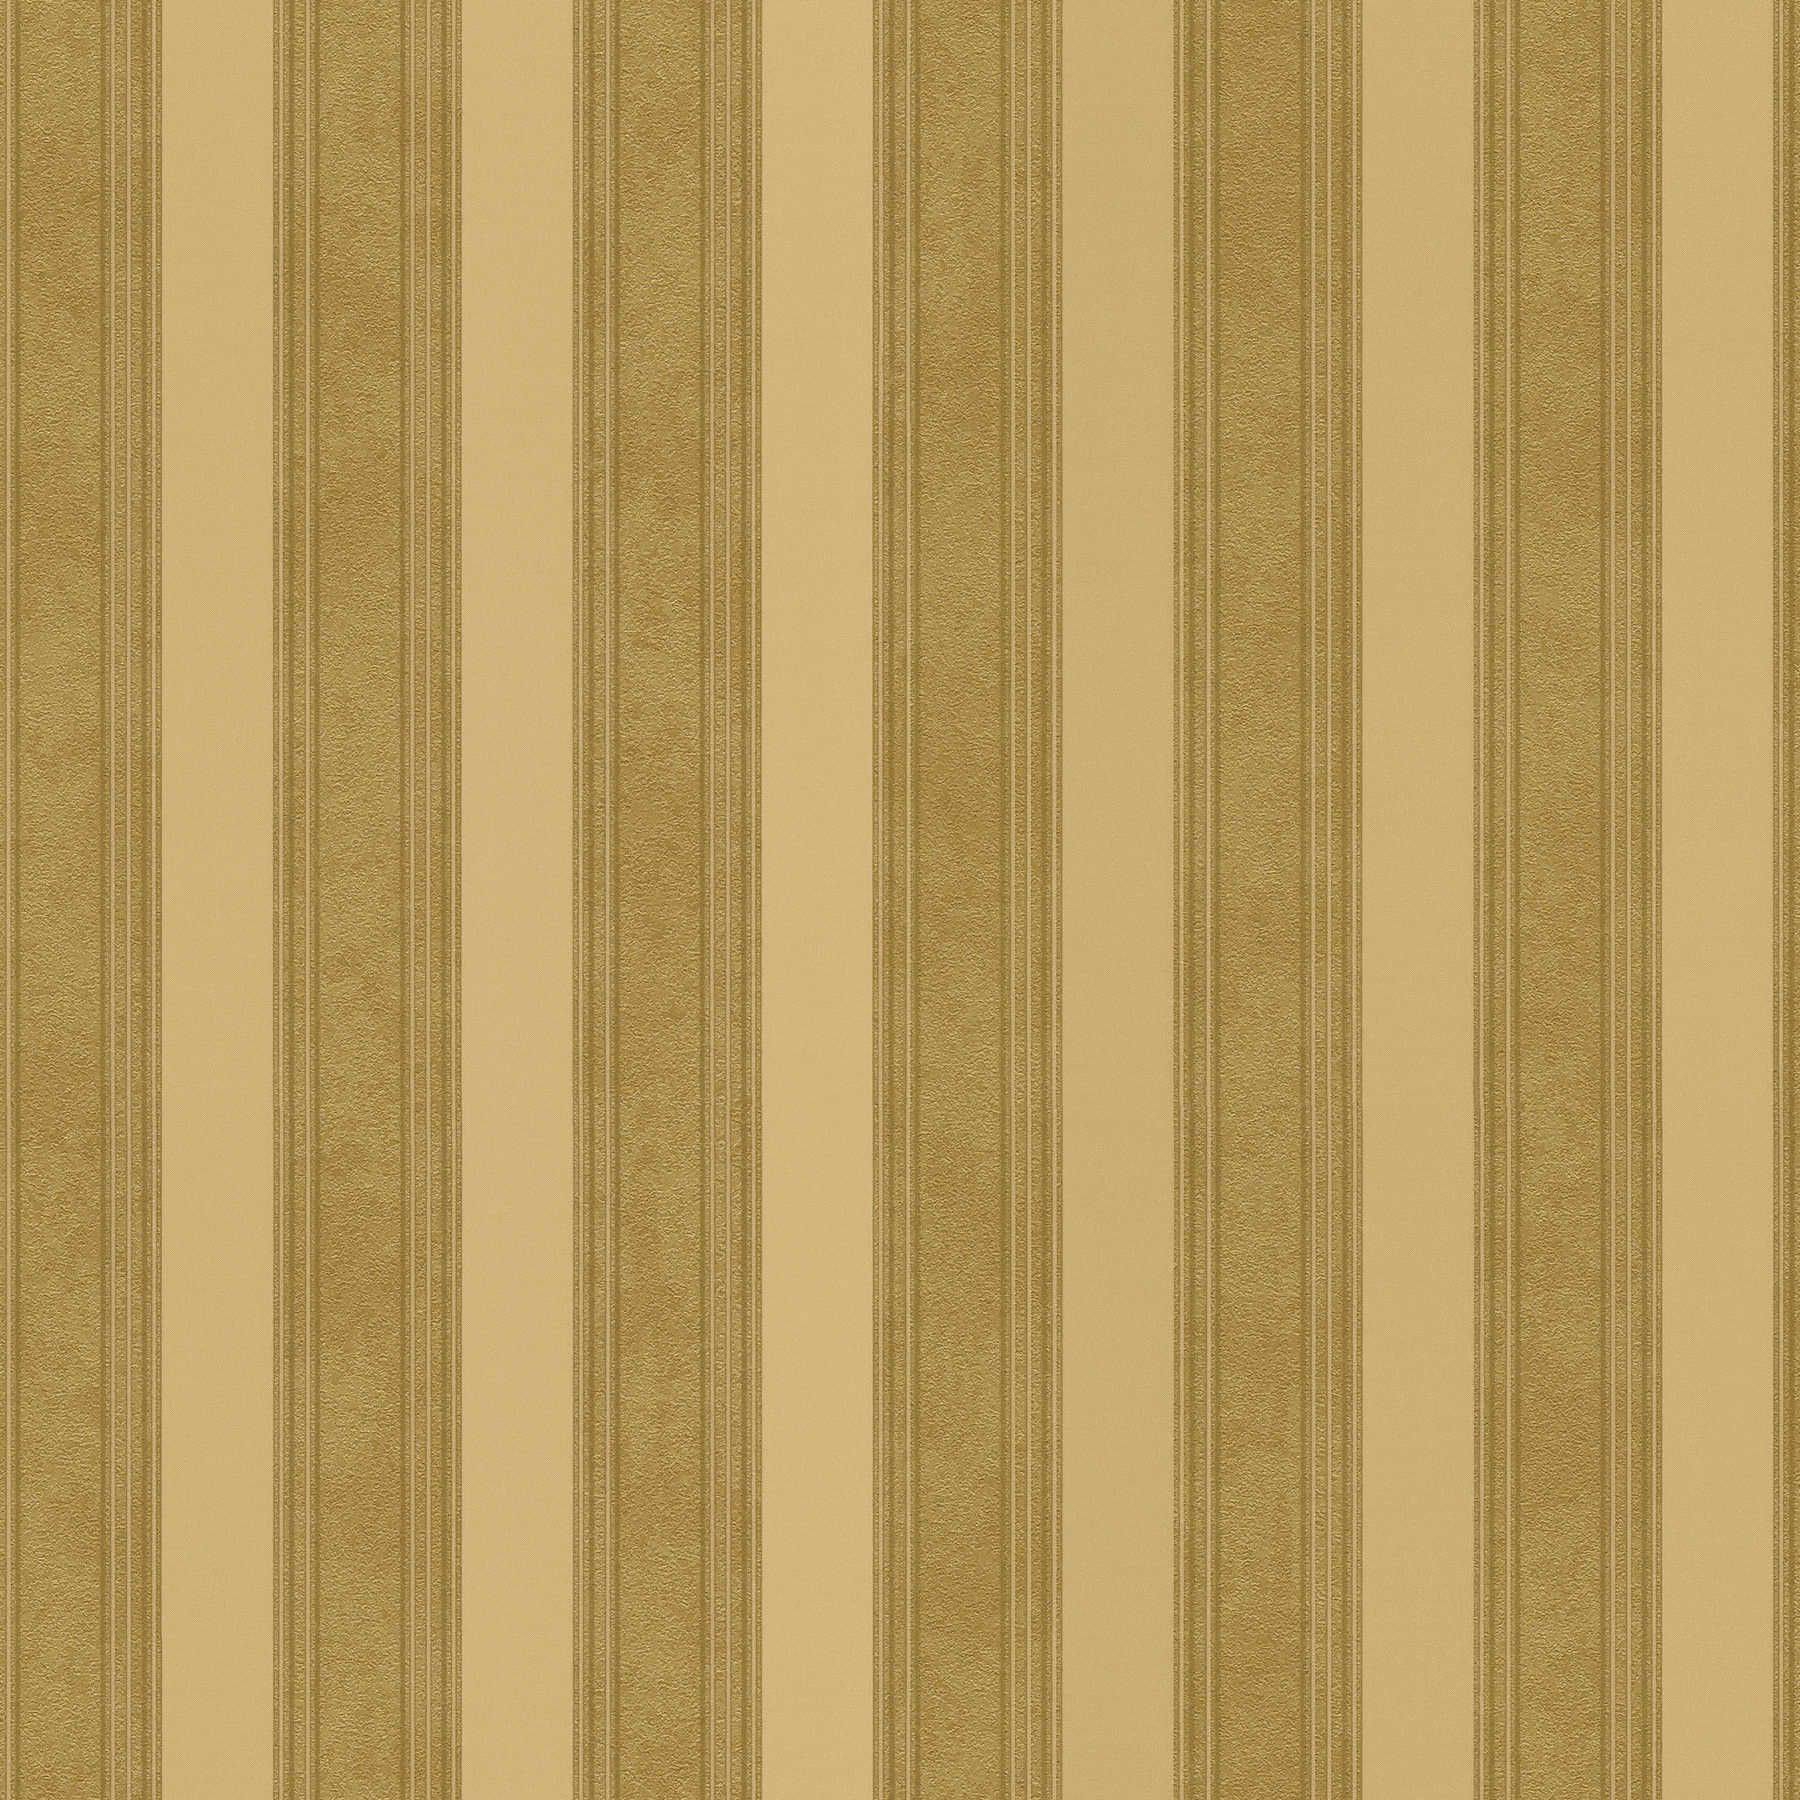 Gouden streep behang met lijnen & textuur effect - metallic
